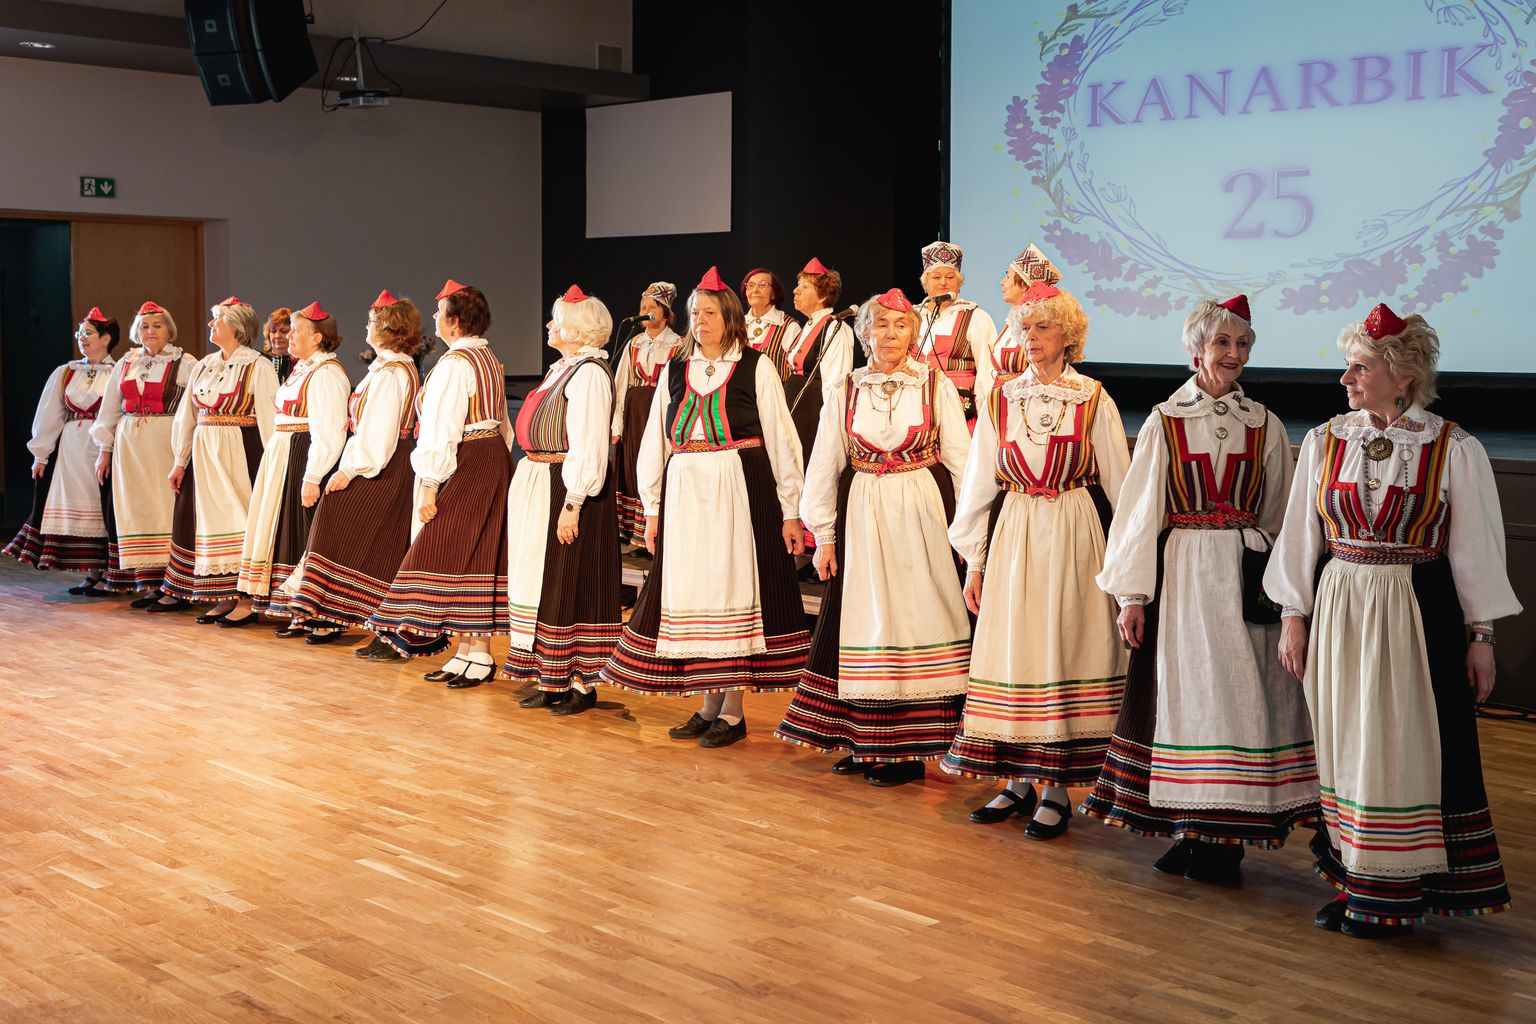 KANARBIK PUBLIKU EES Laulu- ja tantsuansambel Kanarbik oma 25. sünnipäeval
Kuressaare kultuurikeskuses esinemas.